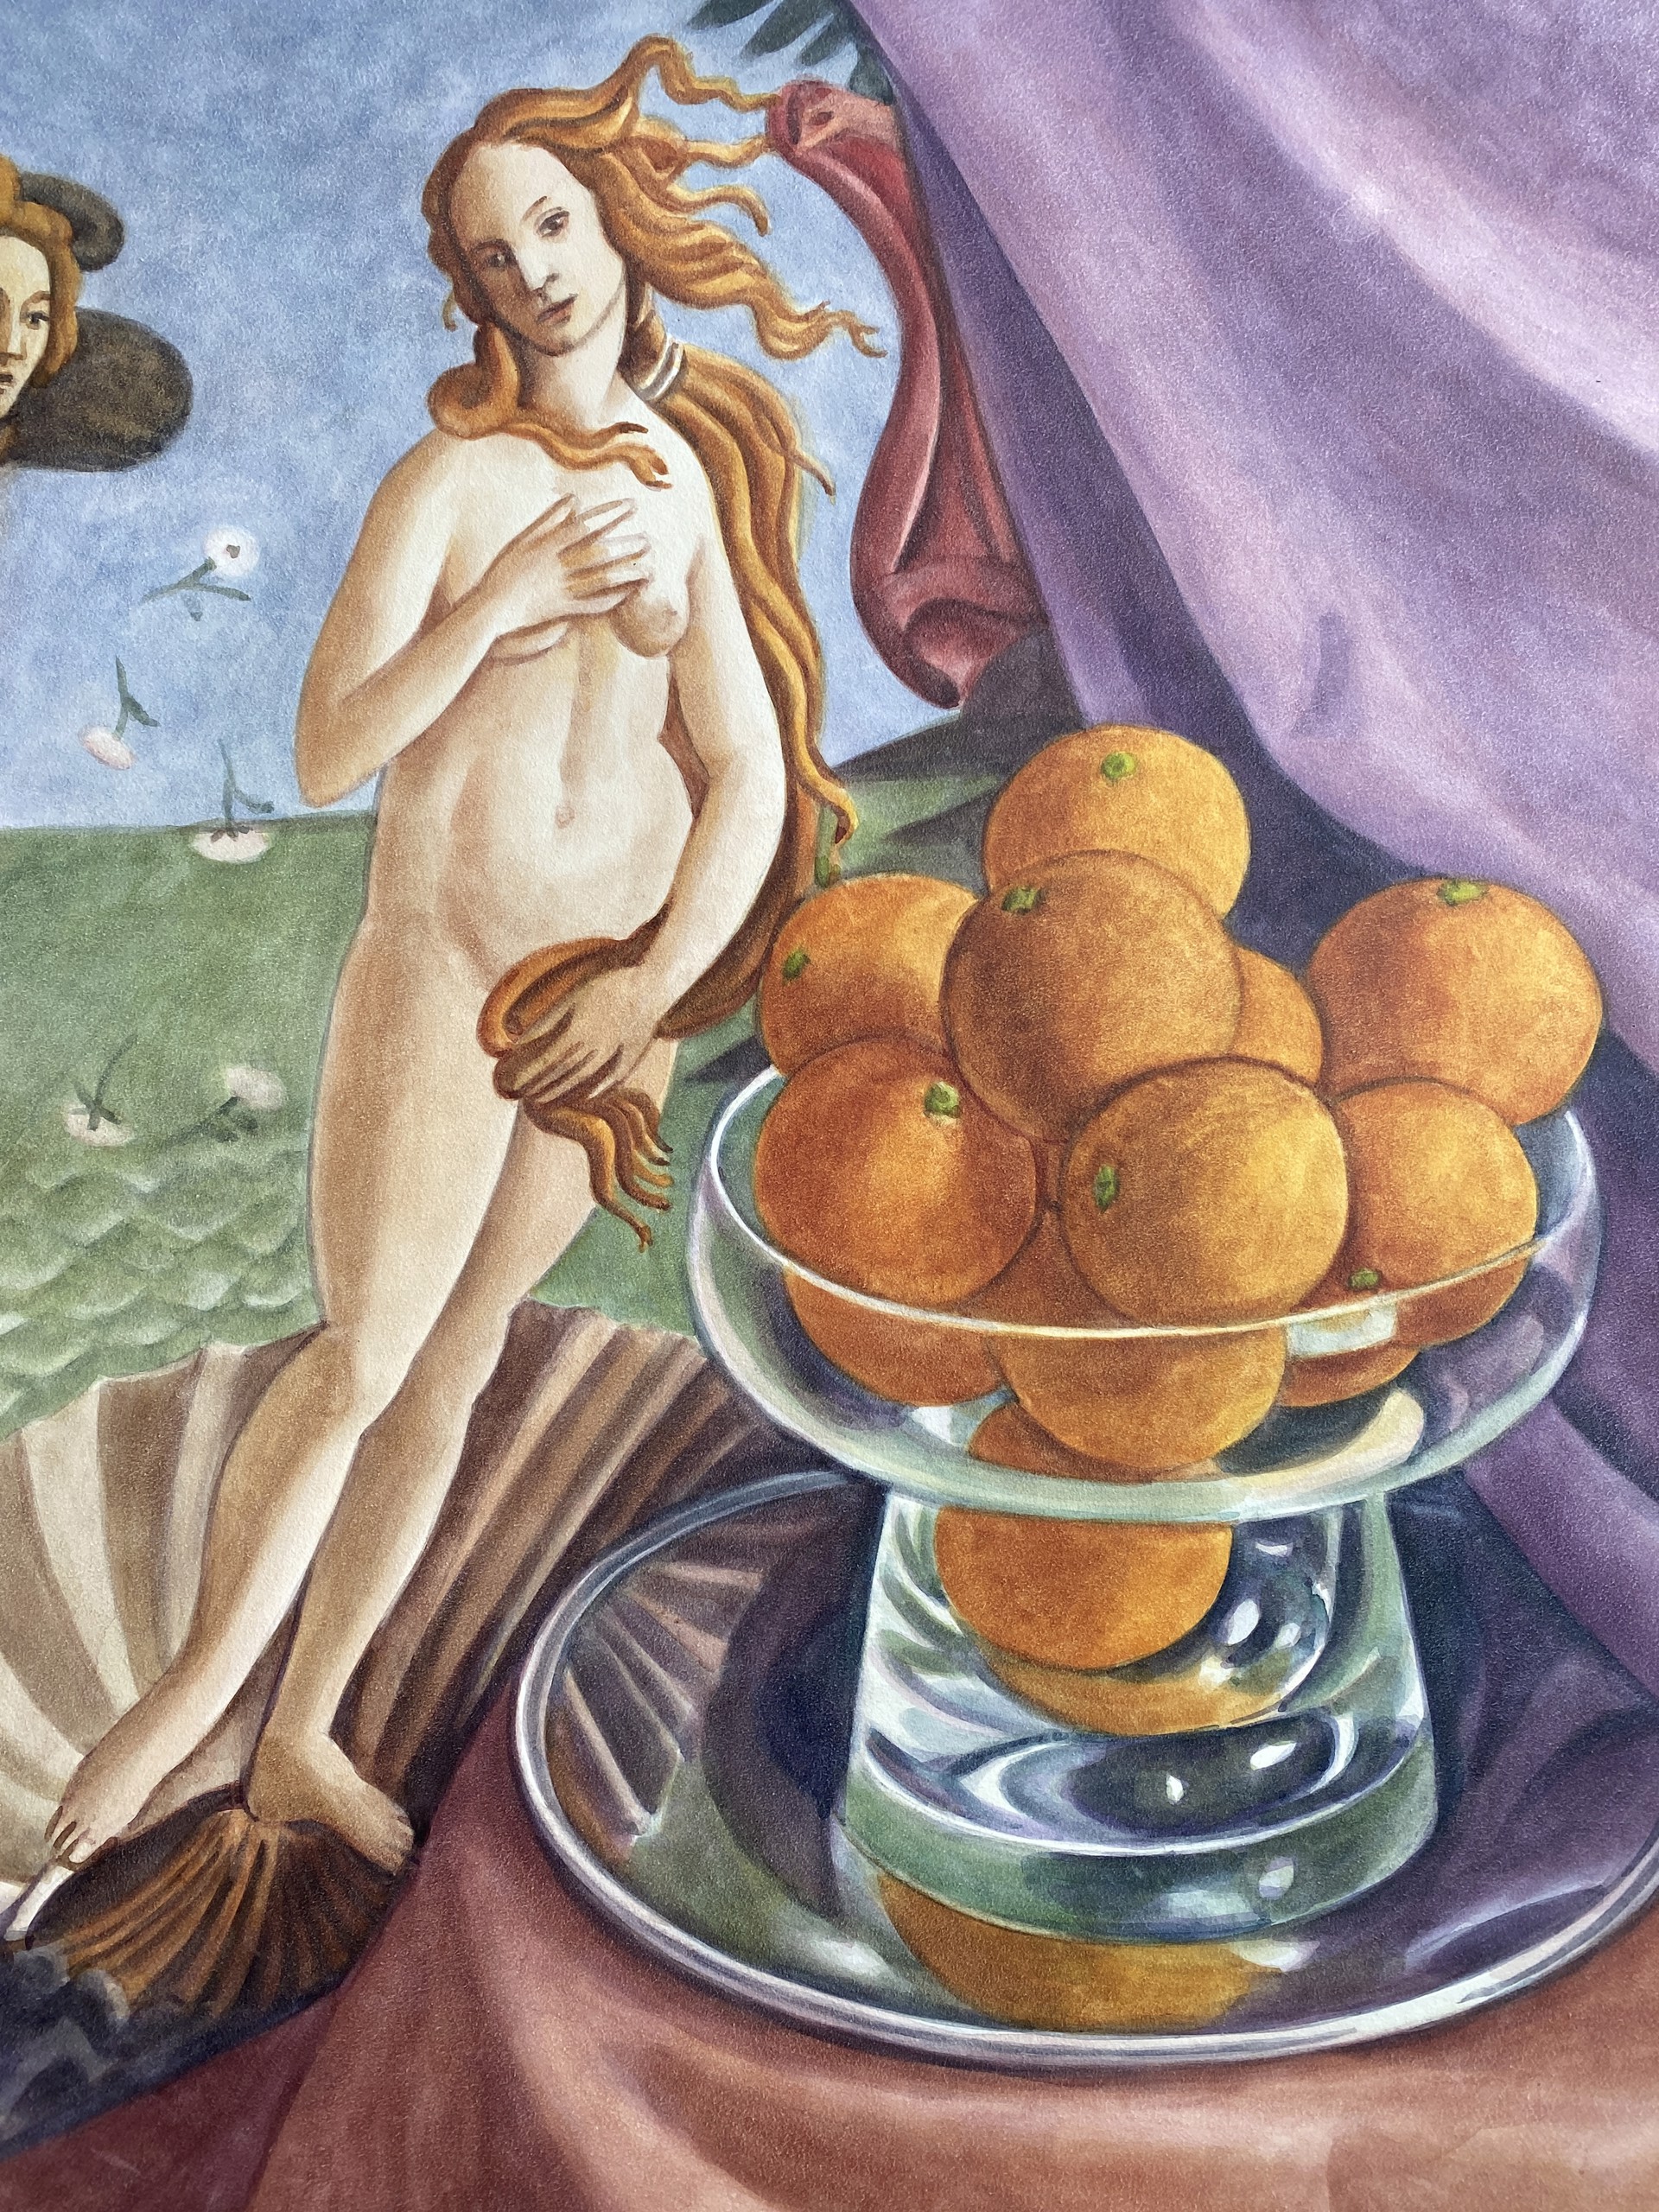 Botticelli Venus with Oranges by Tim Schiffer